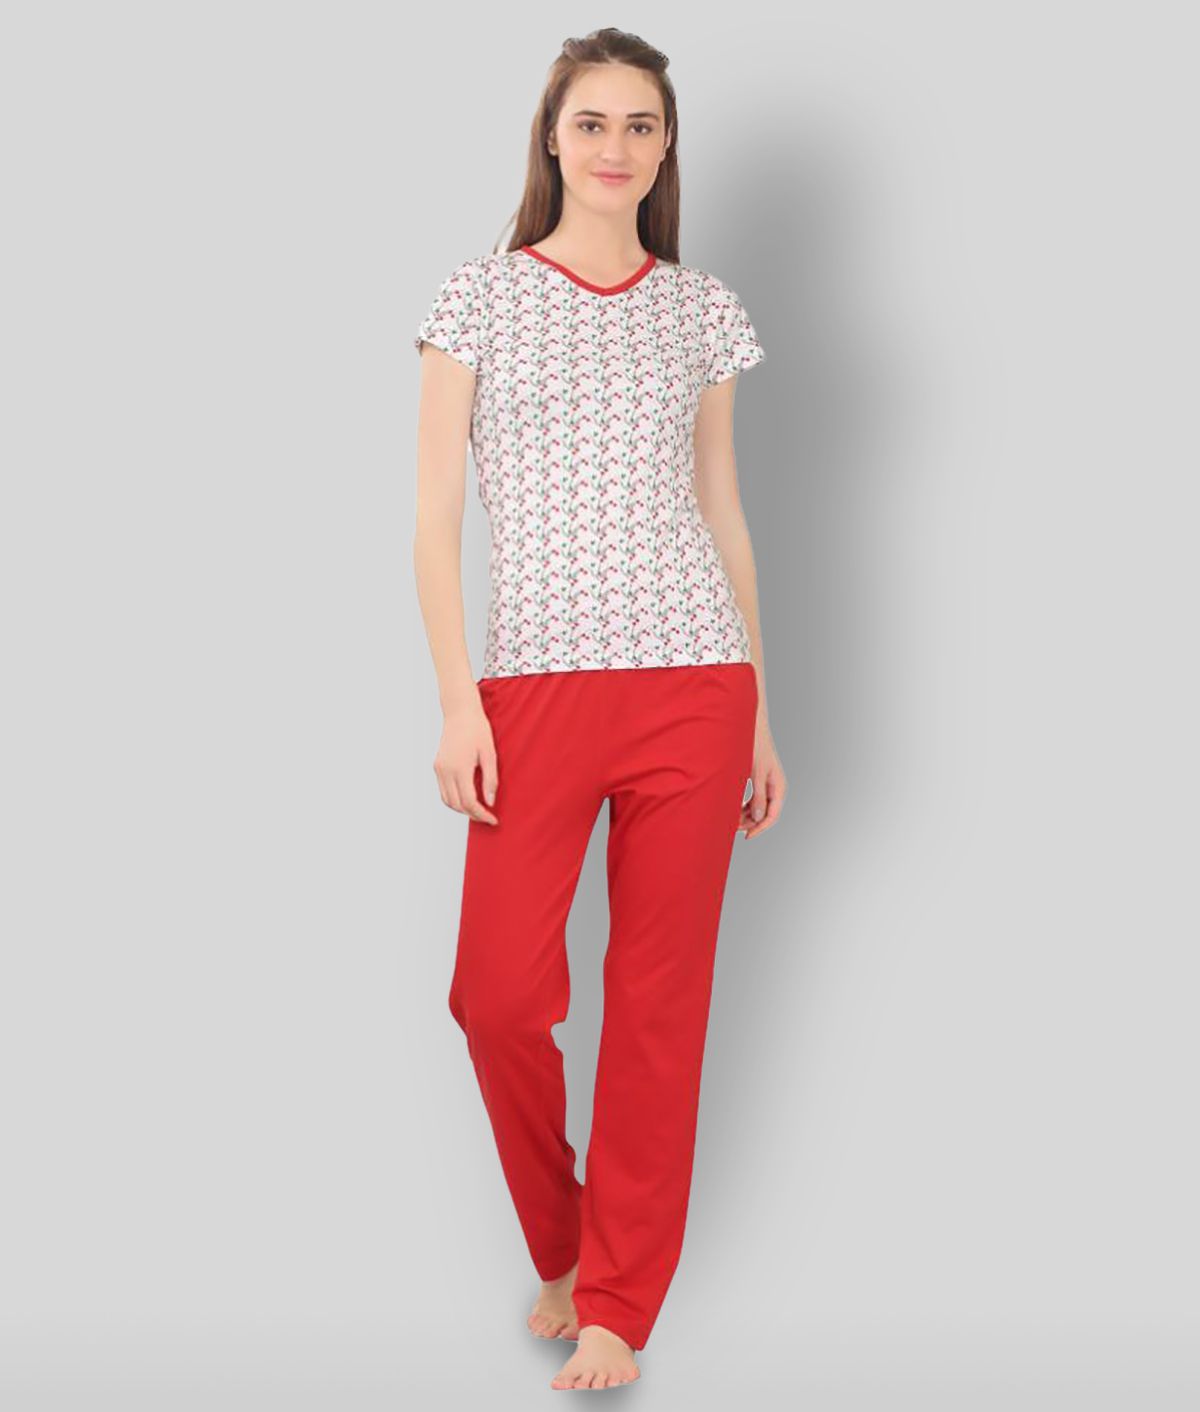     			Zebu - Multicolor Cotton Women's Nightwear Nightsuit Sets ( Pack of 1 )